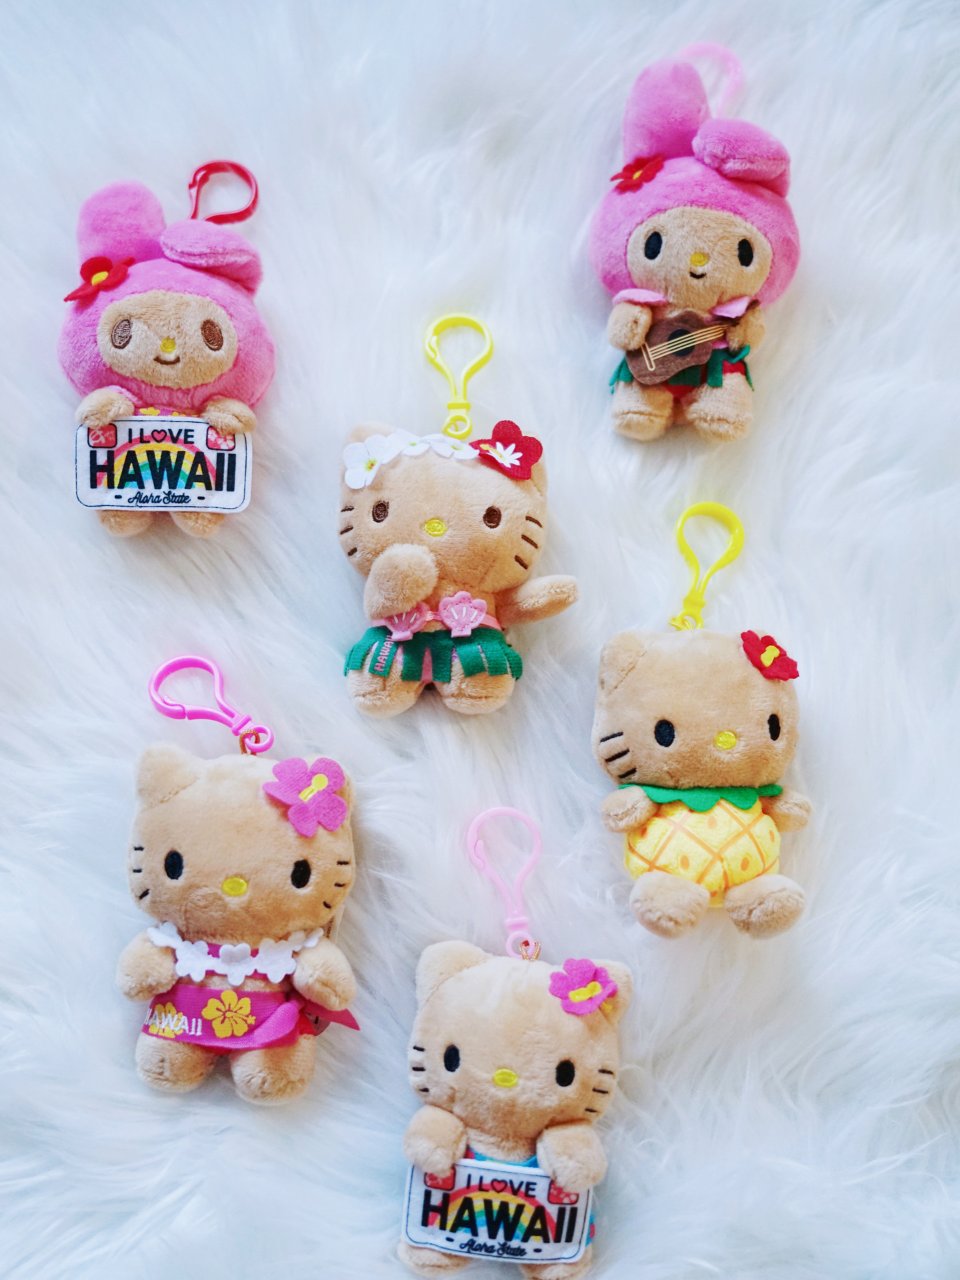 夏威夷黑皮Hello Kitty全套集齐...